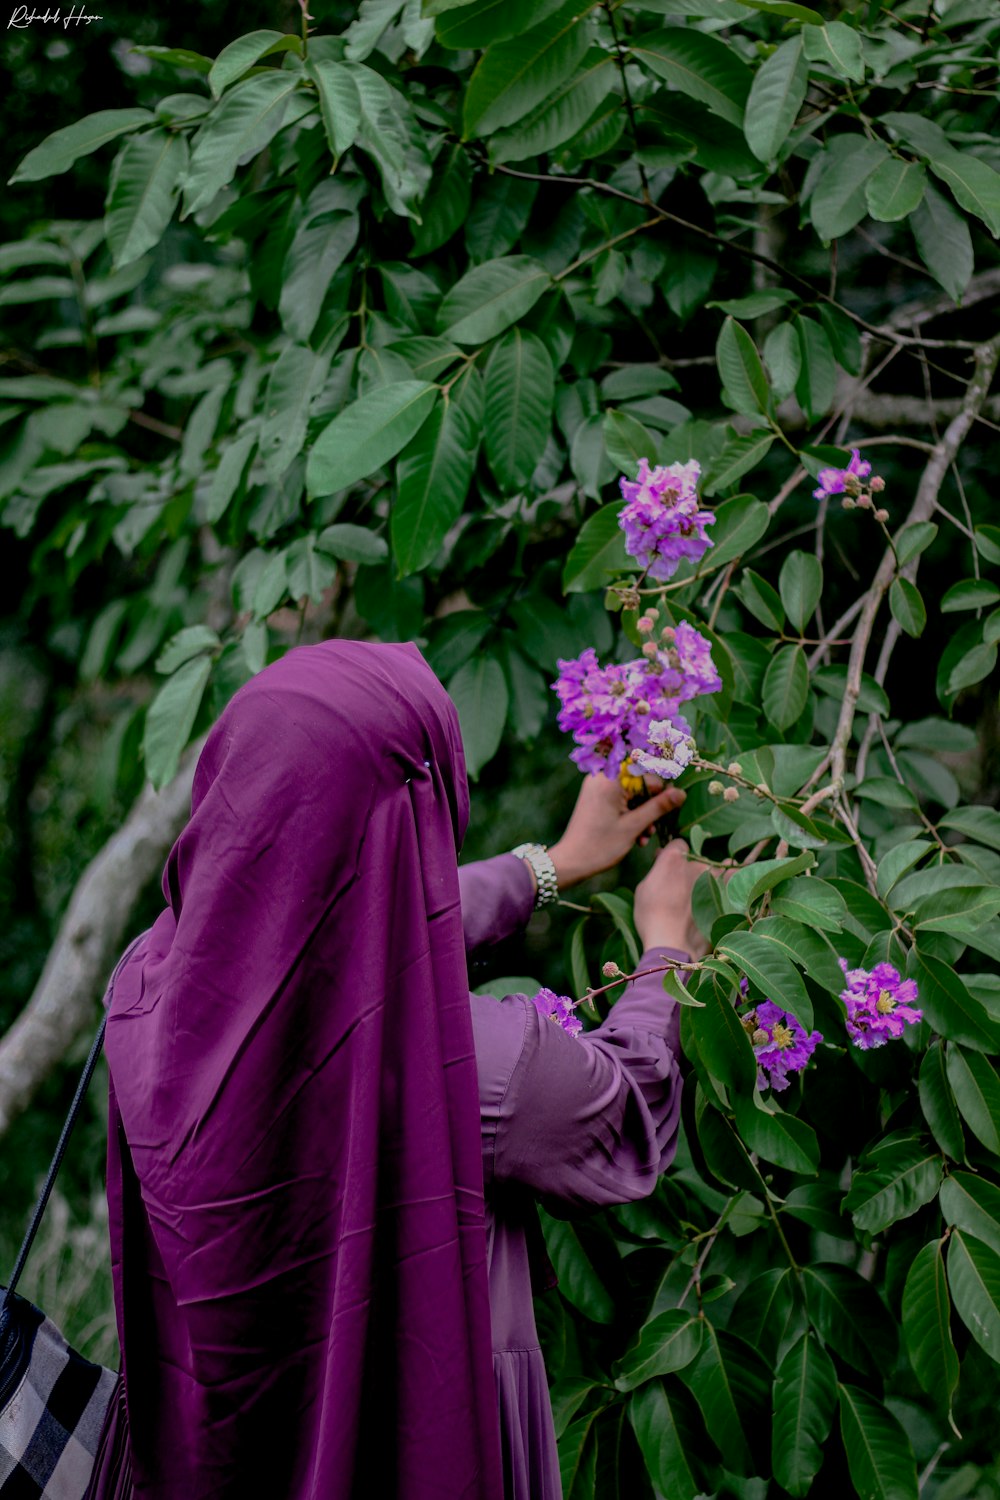 Una mujer con un hijab púrpura recogiendo flores de un árbol